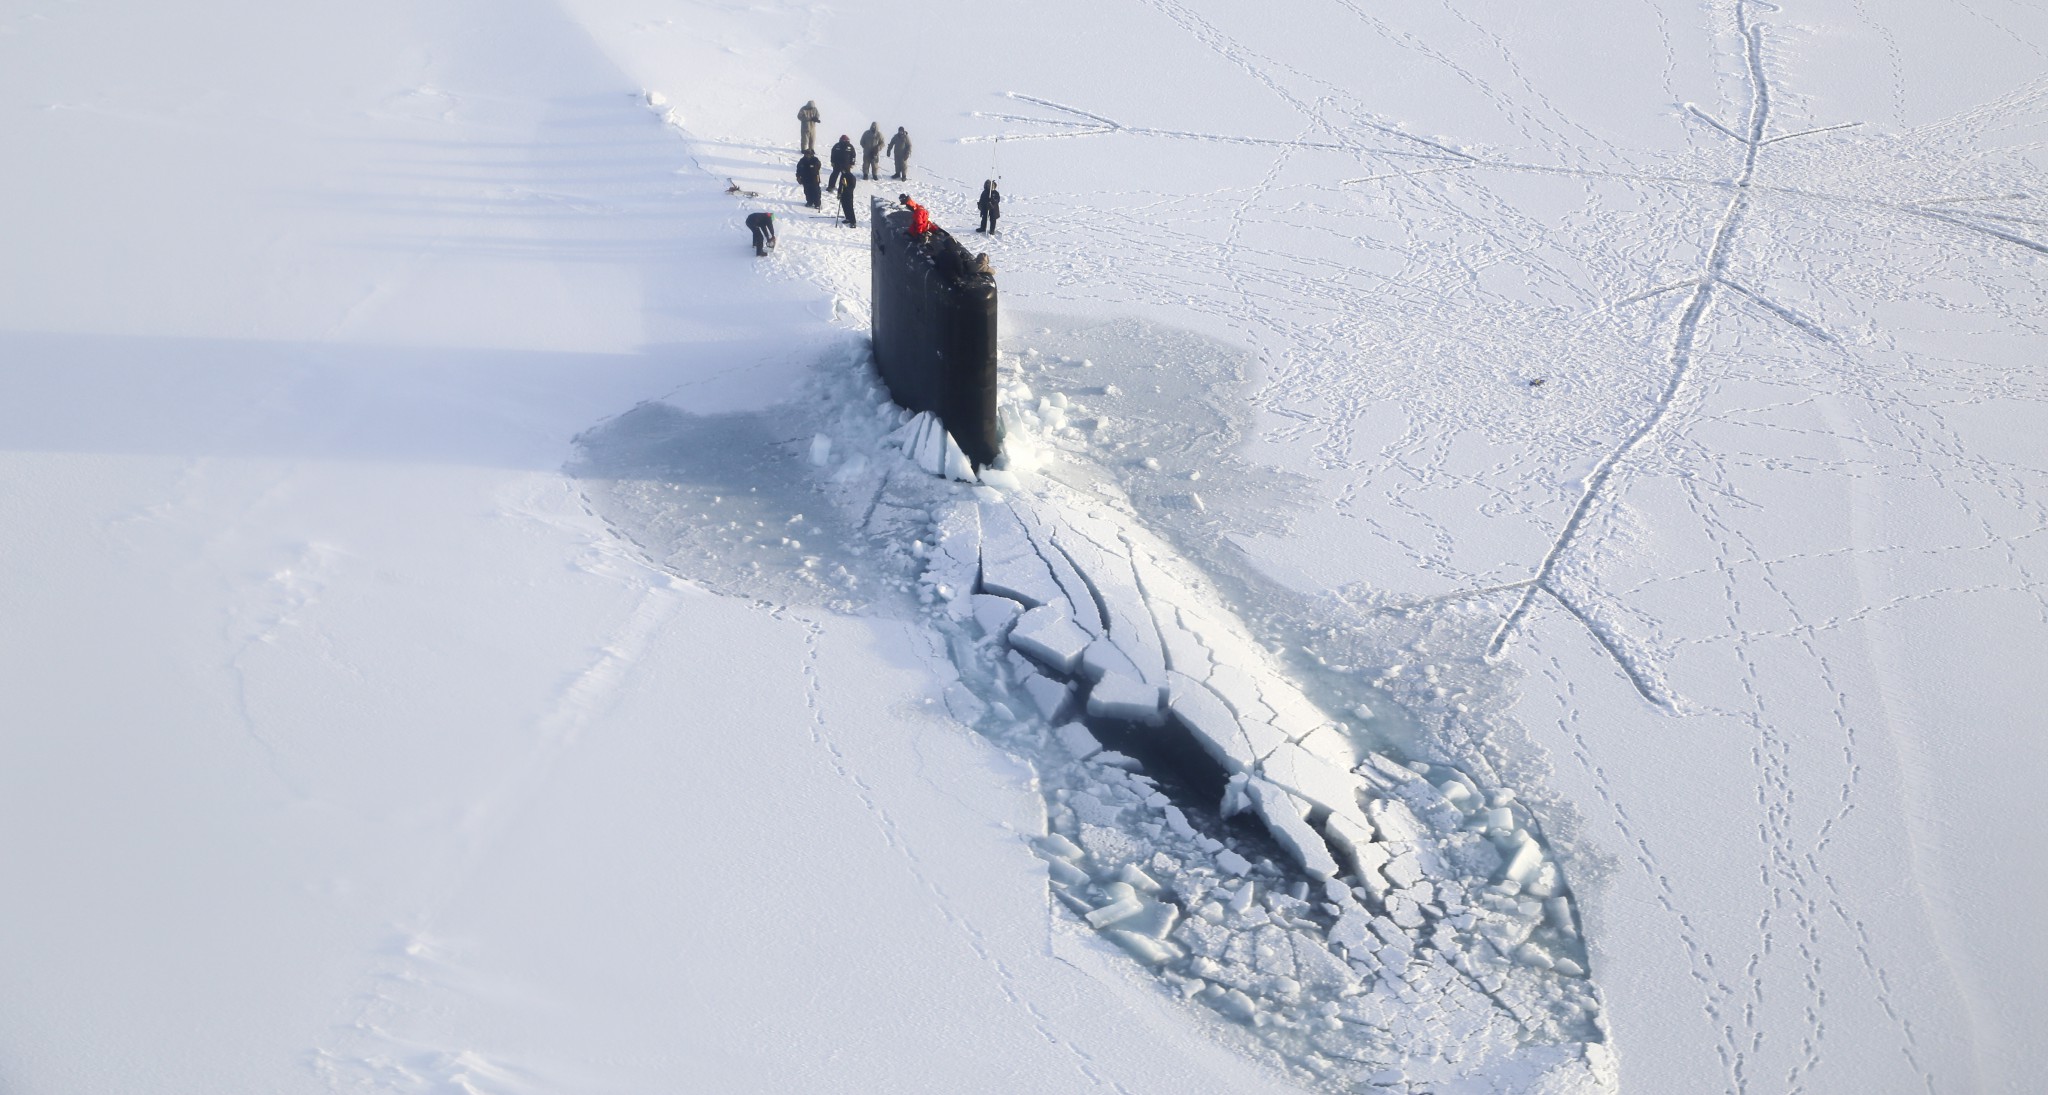 美核潜艇上演破冰上浮一技术只有几国掌握中国是其中之一